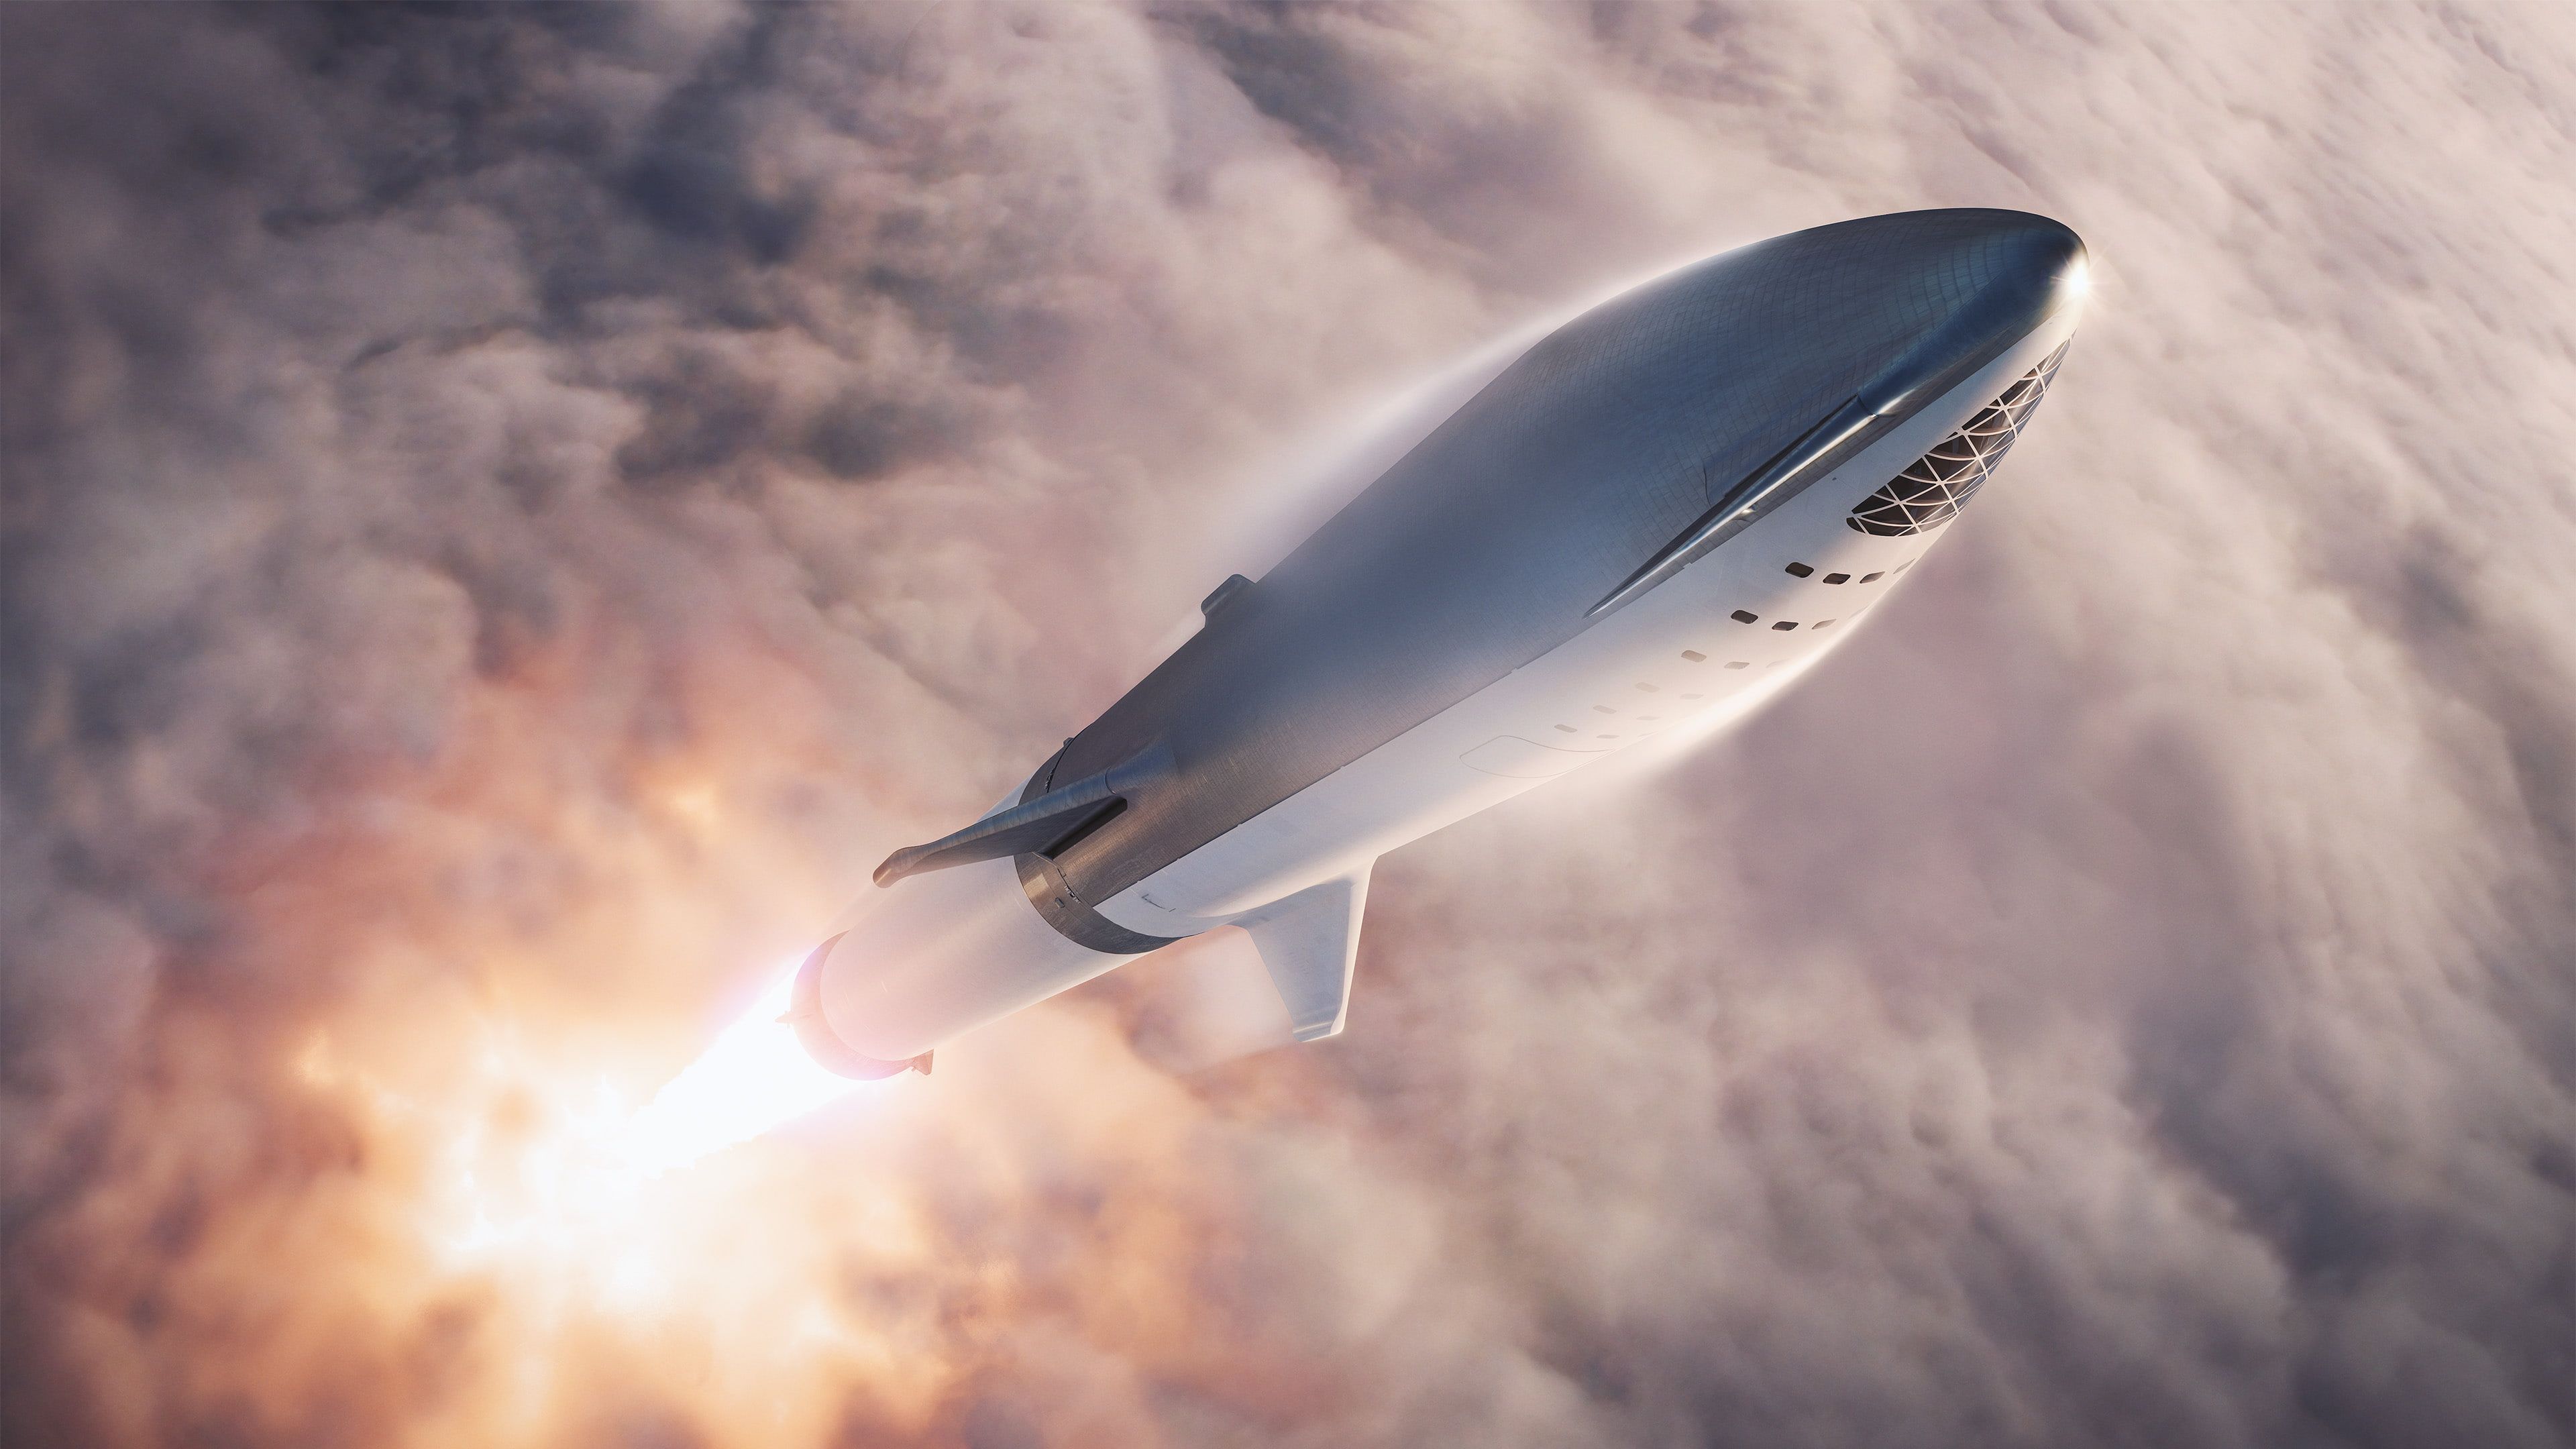 SpaceX #space #spaceship #rocket #clouds #vehicle K #wallpaper #hdwallpaper #desktop. Spacex, Spacex starship, Spacecraft